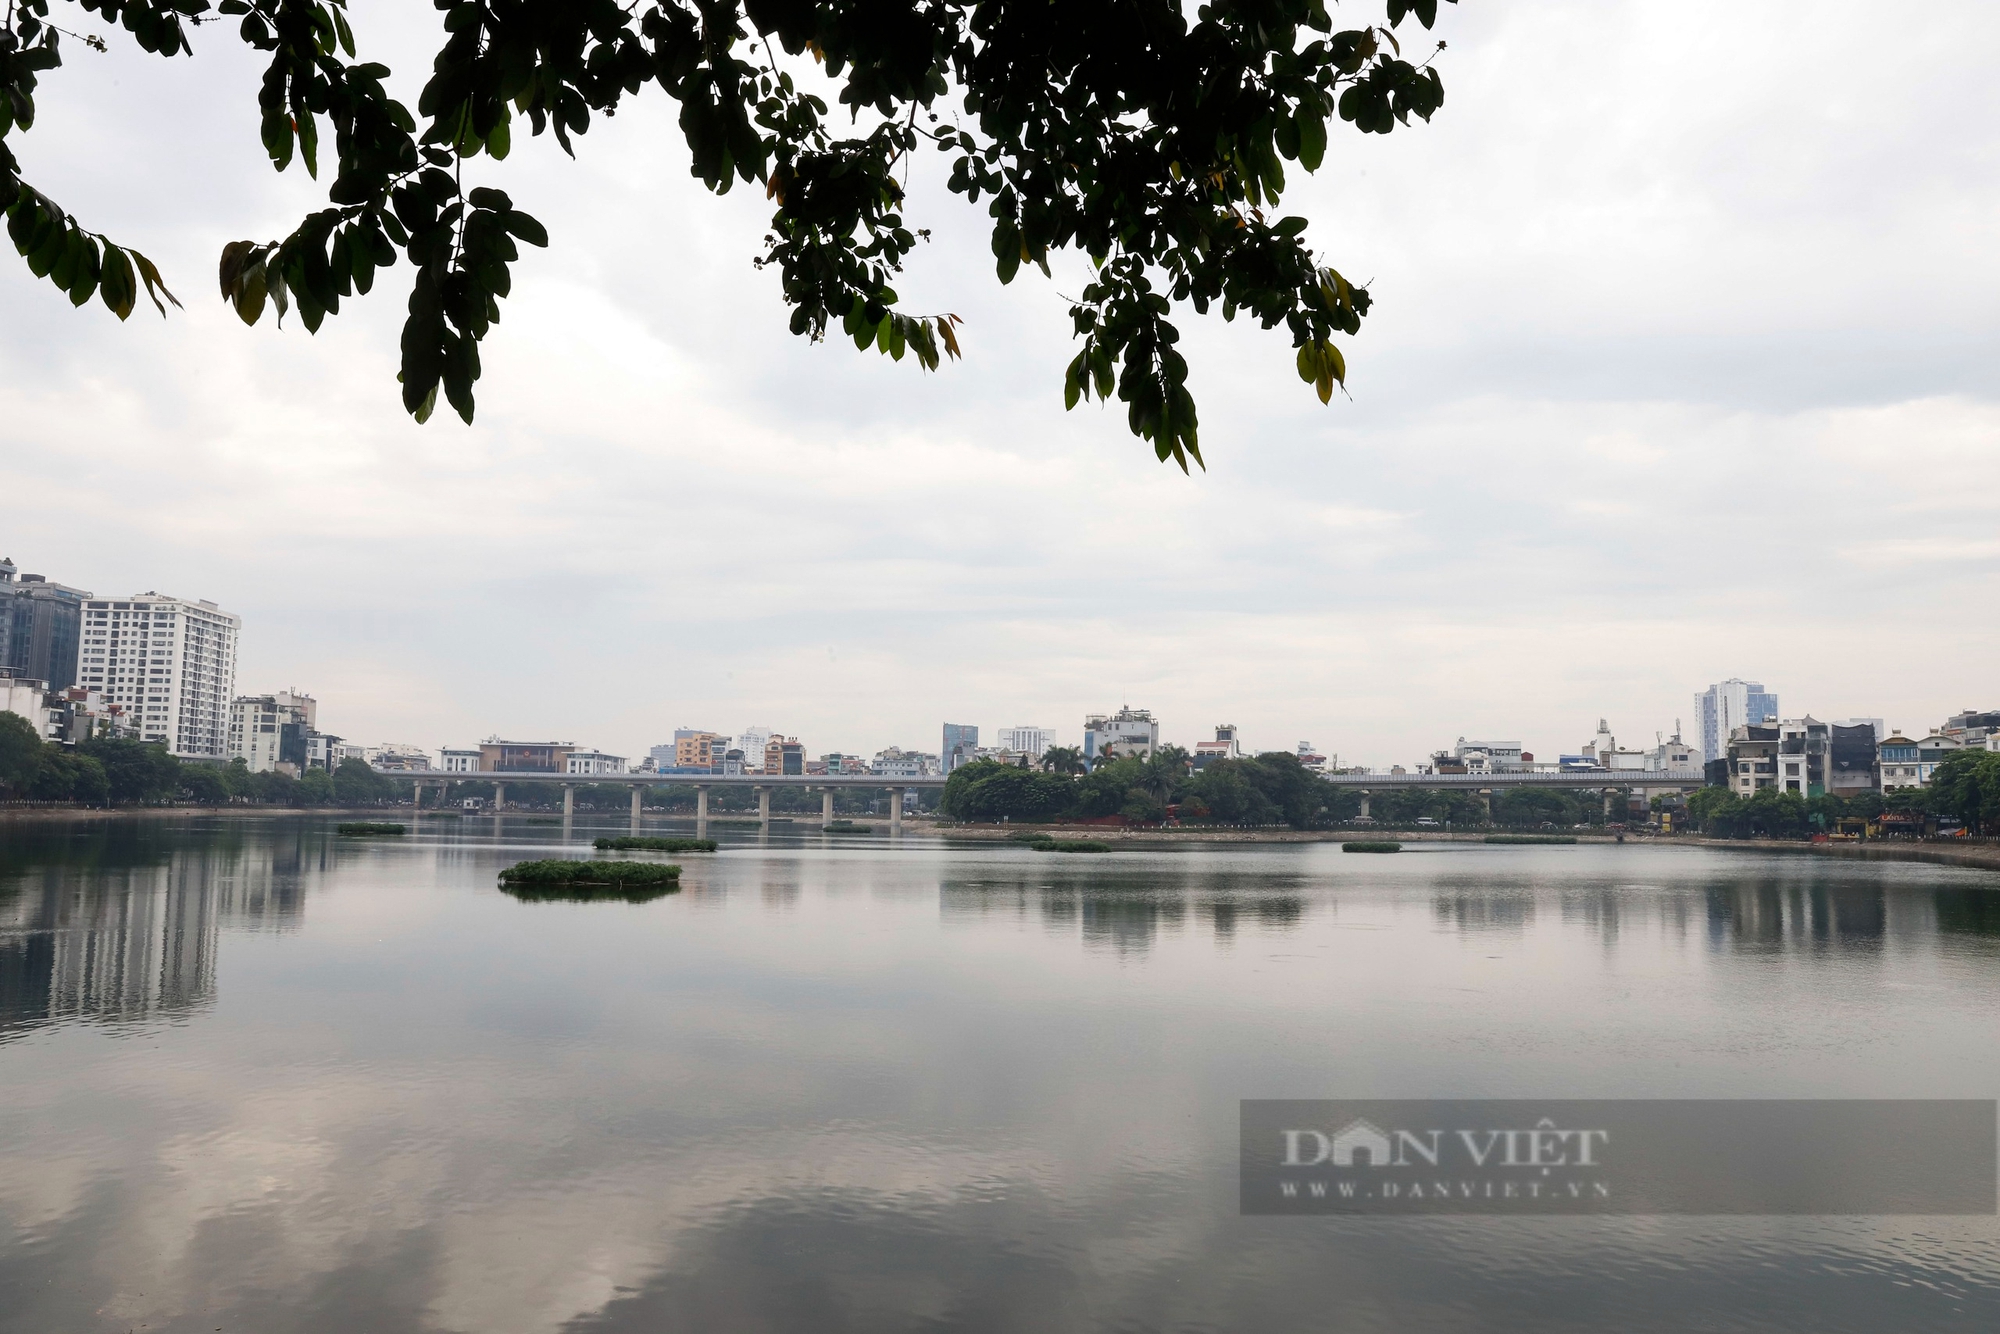 Khu vực hồ nước rộng 13,5 ha được Hà Nội chọn phát triển kinh tế đêm có gì đặc biệt?- Ảnh 2.